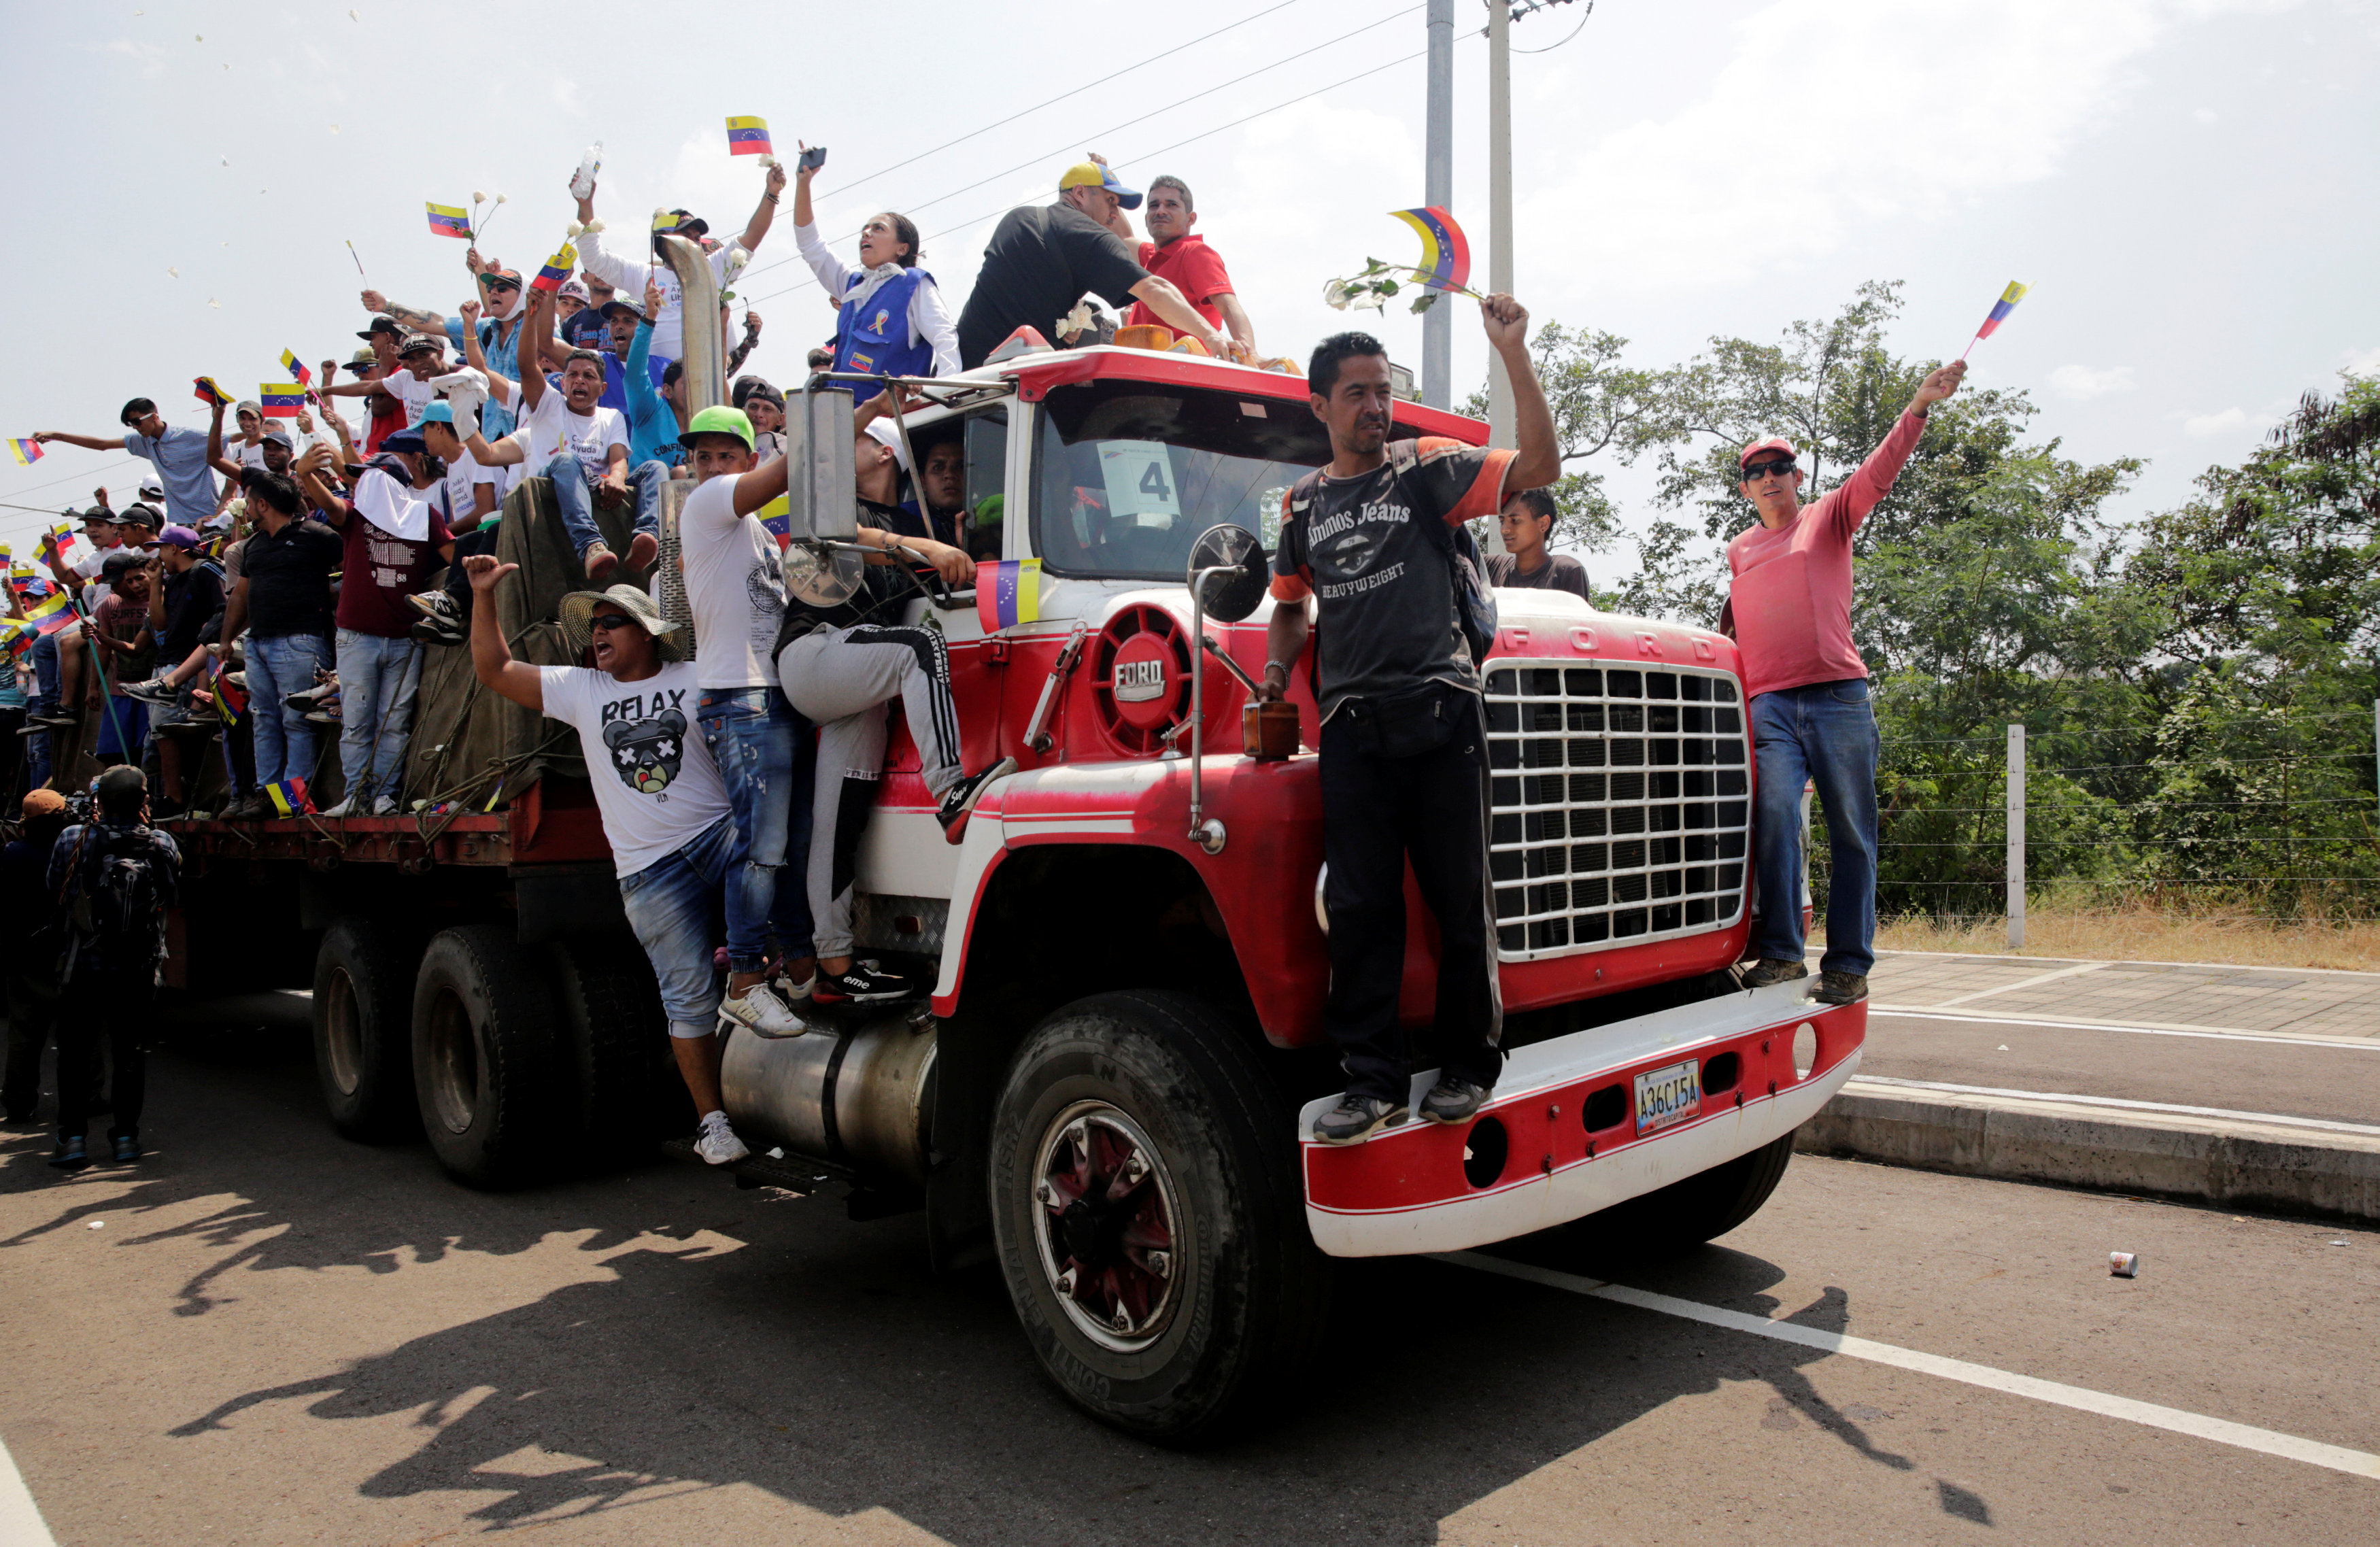 Ayuda humanitaria proveniente de Colombia ya está en territorio venezolano, dice Guaidó